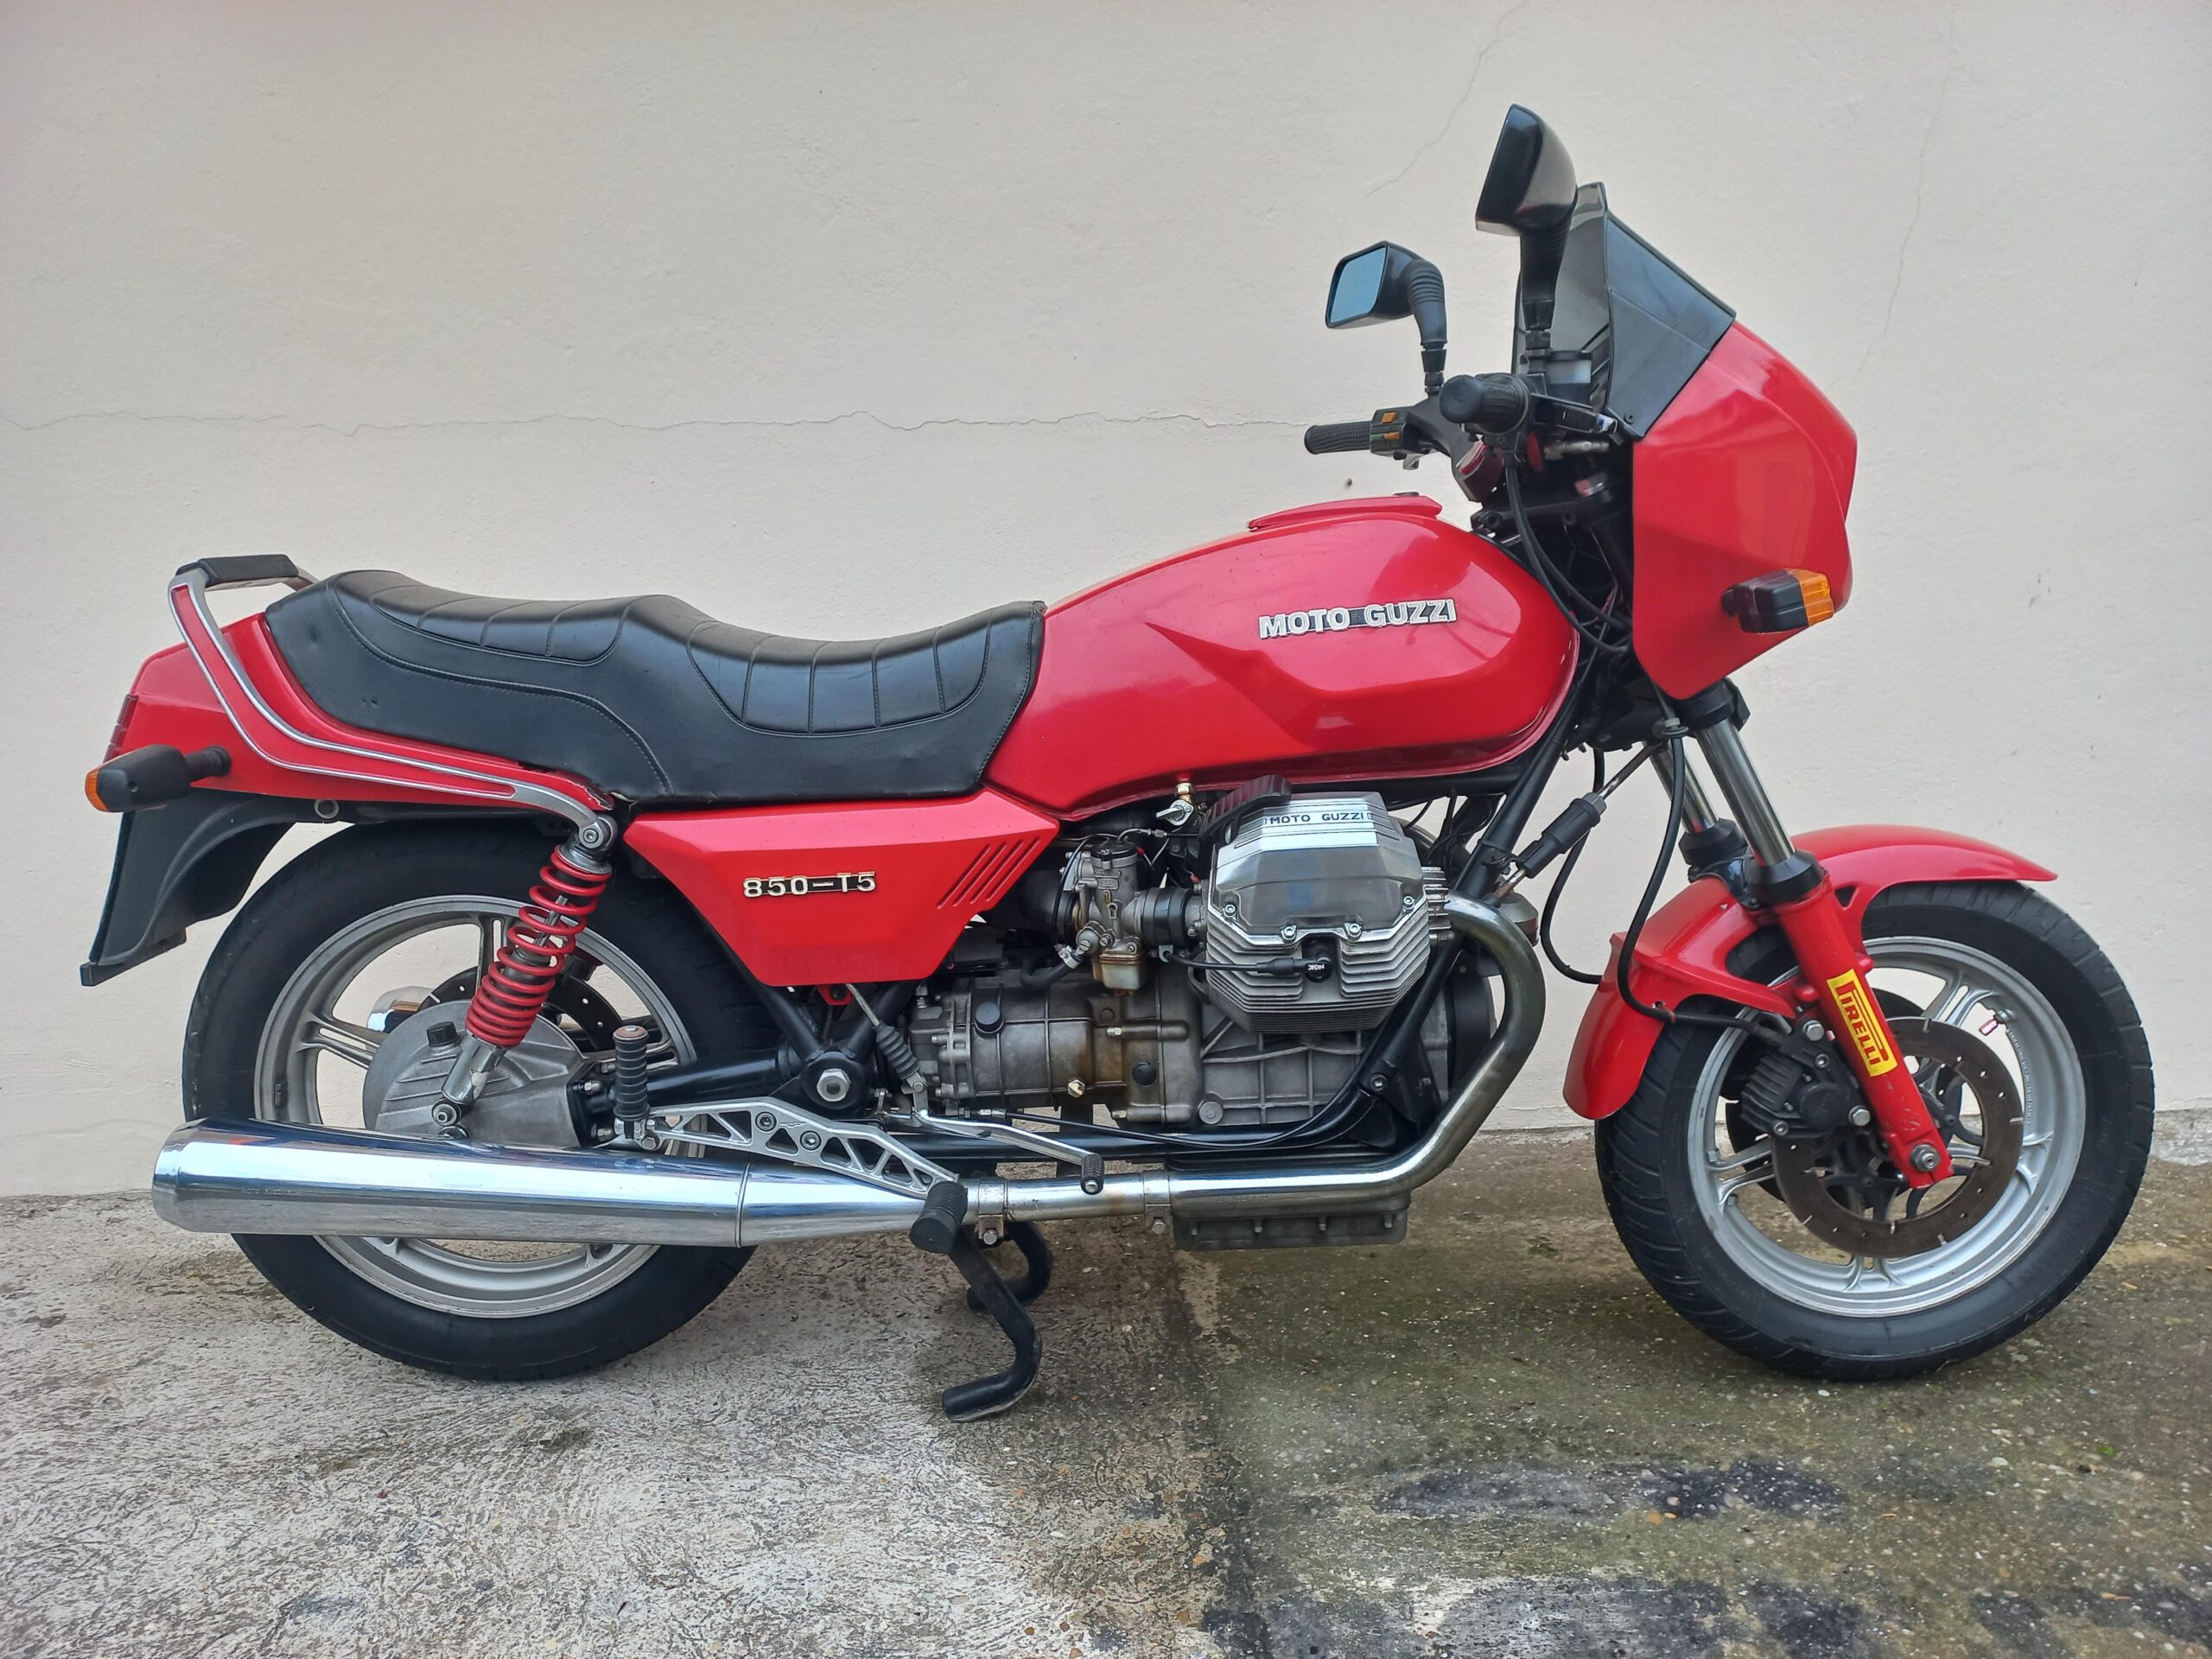 T5 850cc 1986